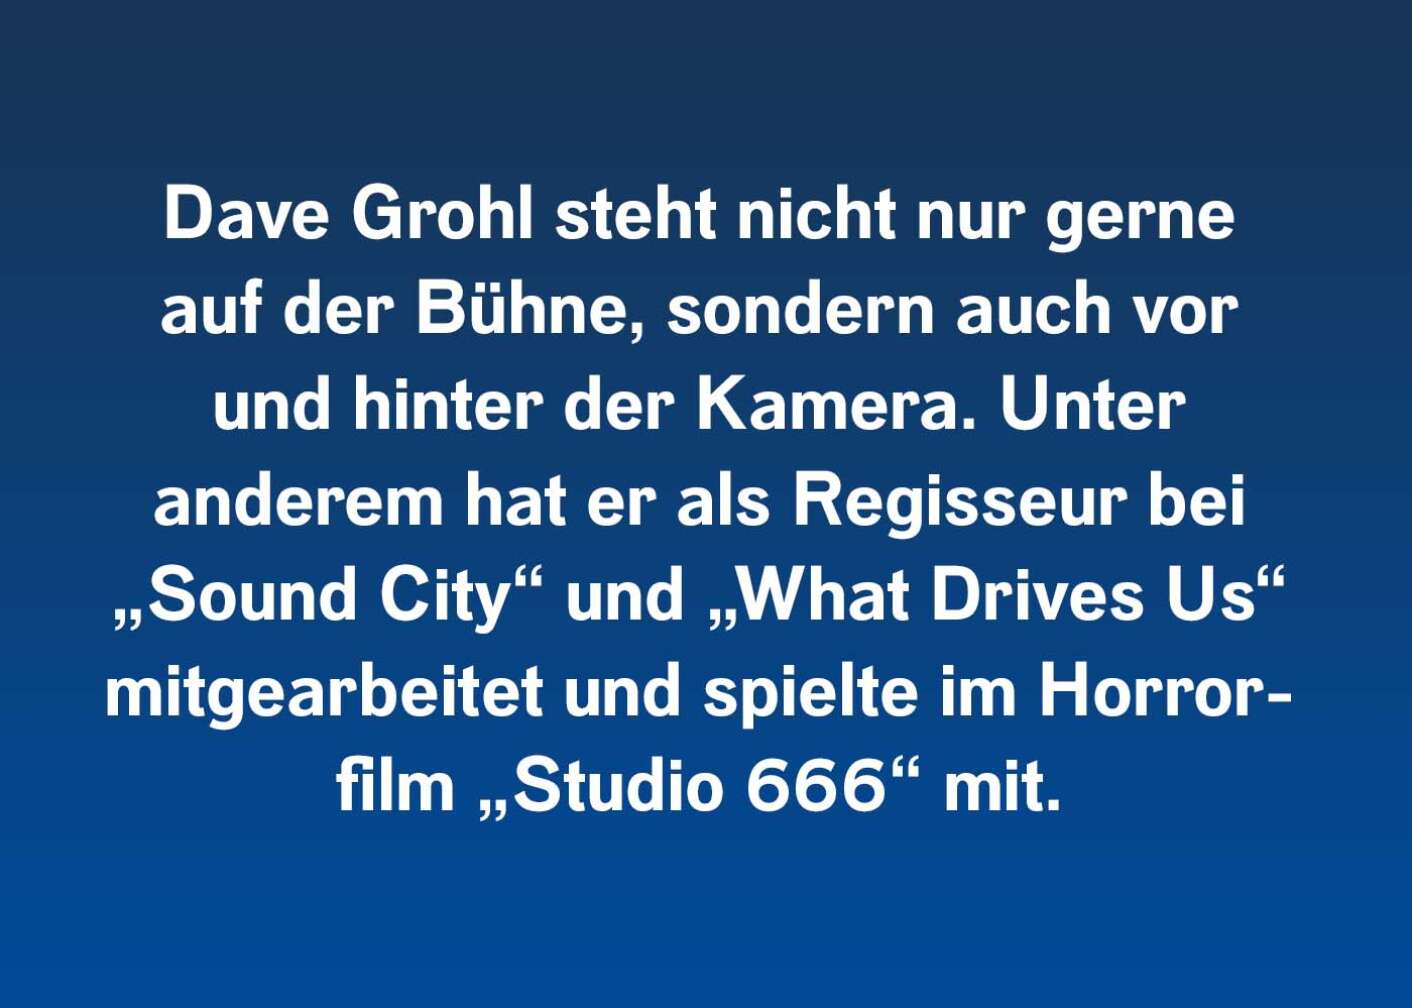 Dave Grohl steht nicht nur gerne auf der Bühne, sondern auch vor und hinter der Kamera. Unter anderem hat er als Regisseur bei „Sound City“ und „What Drives Us“ mitgearbeitet und spielte im Horrorfilm „Studio 666“ mit.